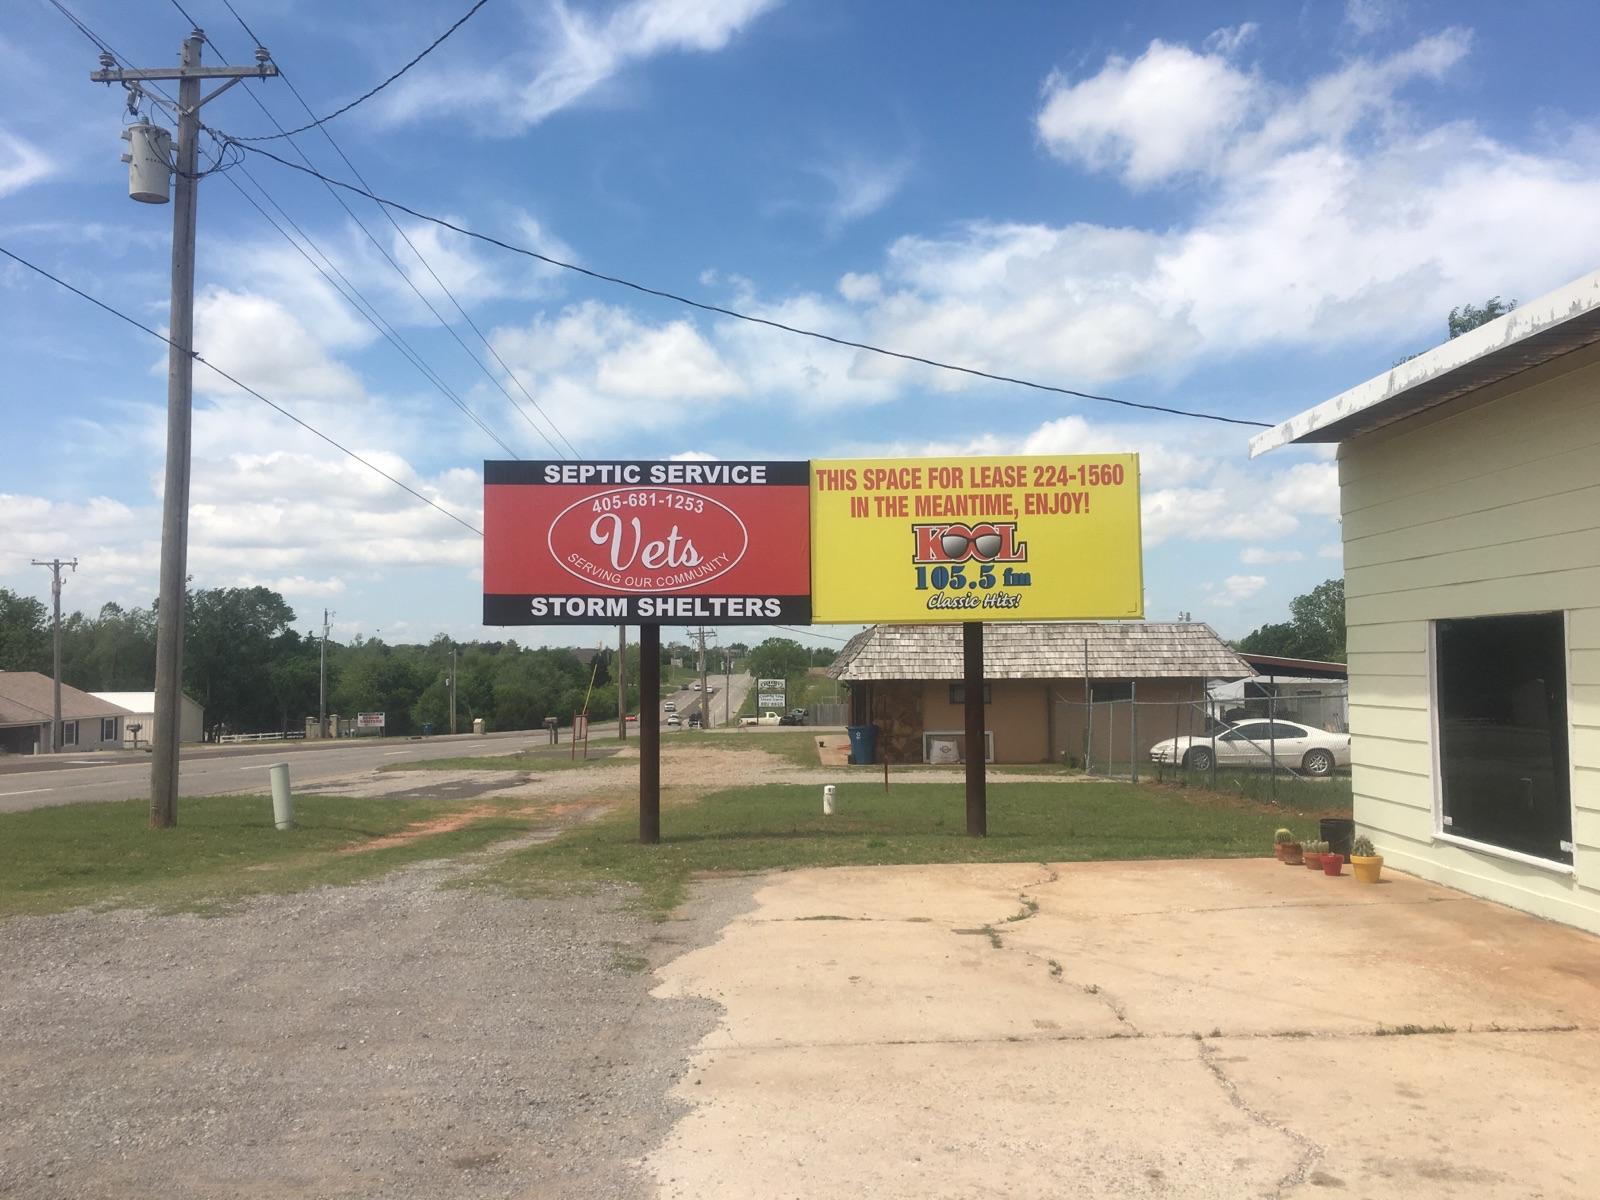 Side-by-side billboard